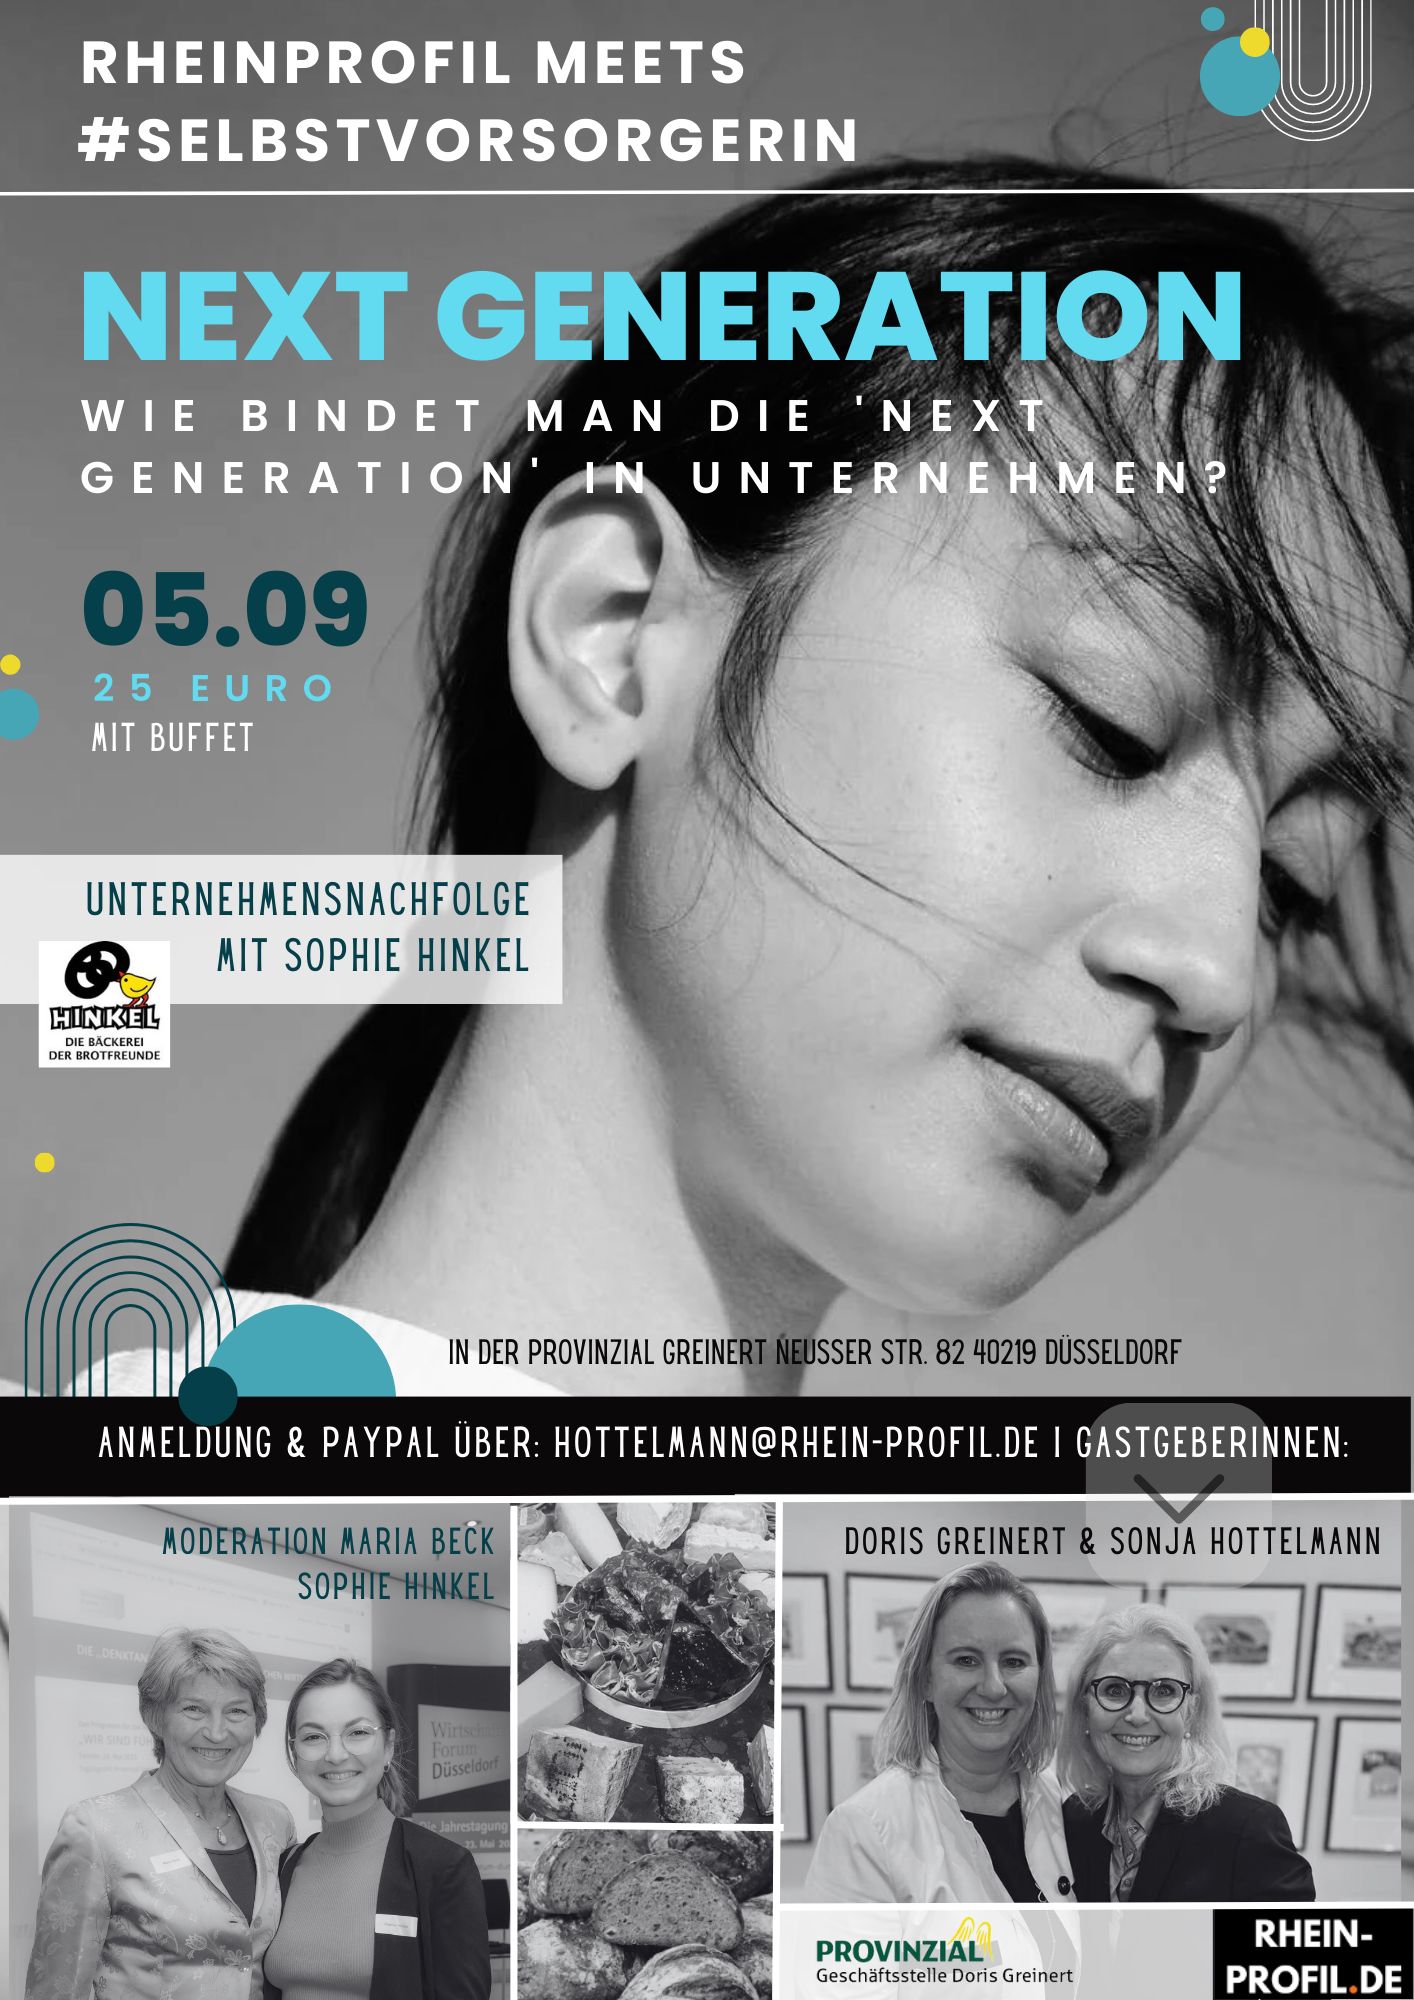 NEXT GENERATION! Wie bindet man die ’next generation‘ in Unternehmen ein?                                        4. Business-Netzwerkabend für Unternehmerinnen aus und um Düsseldorf.